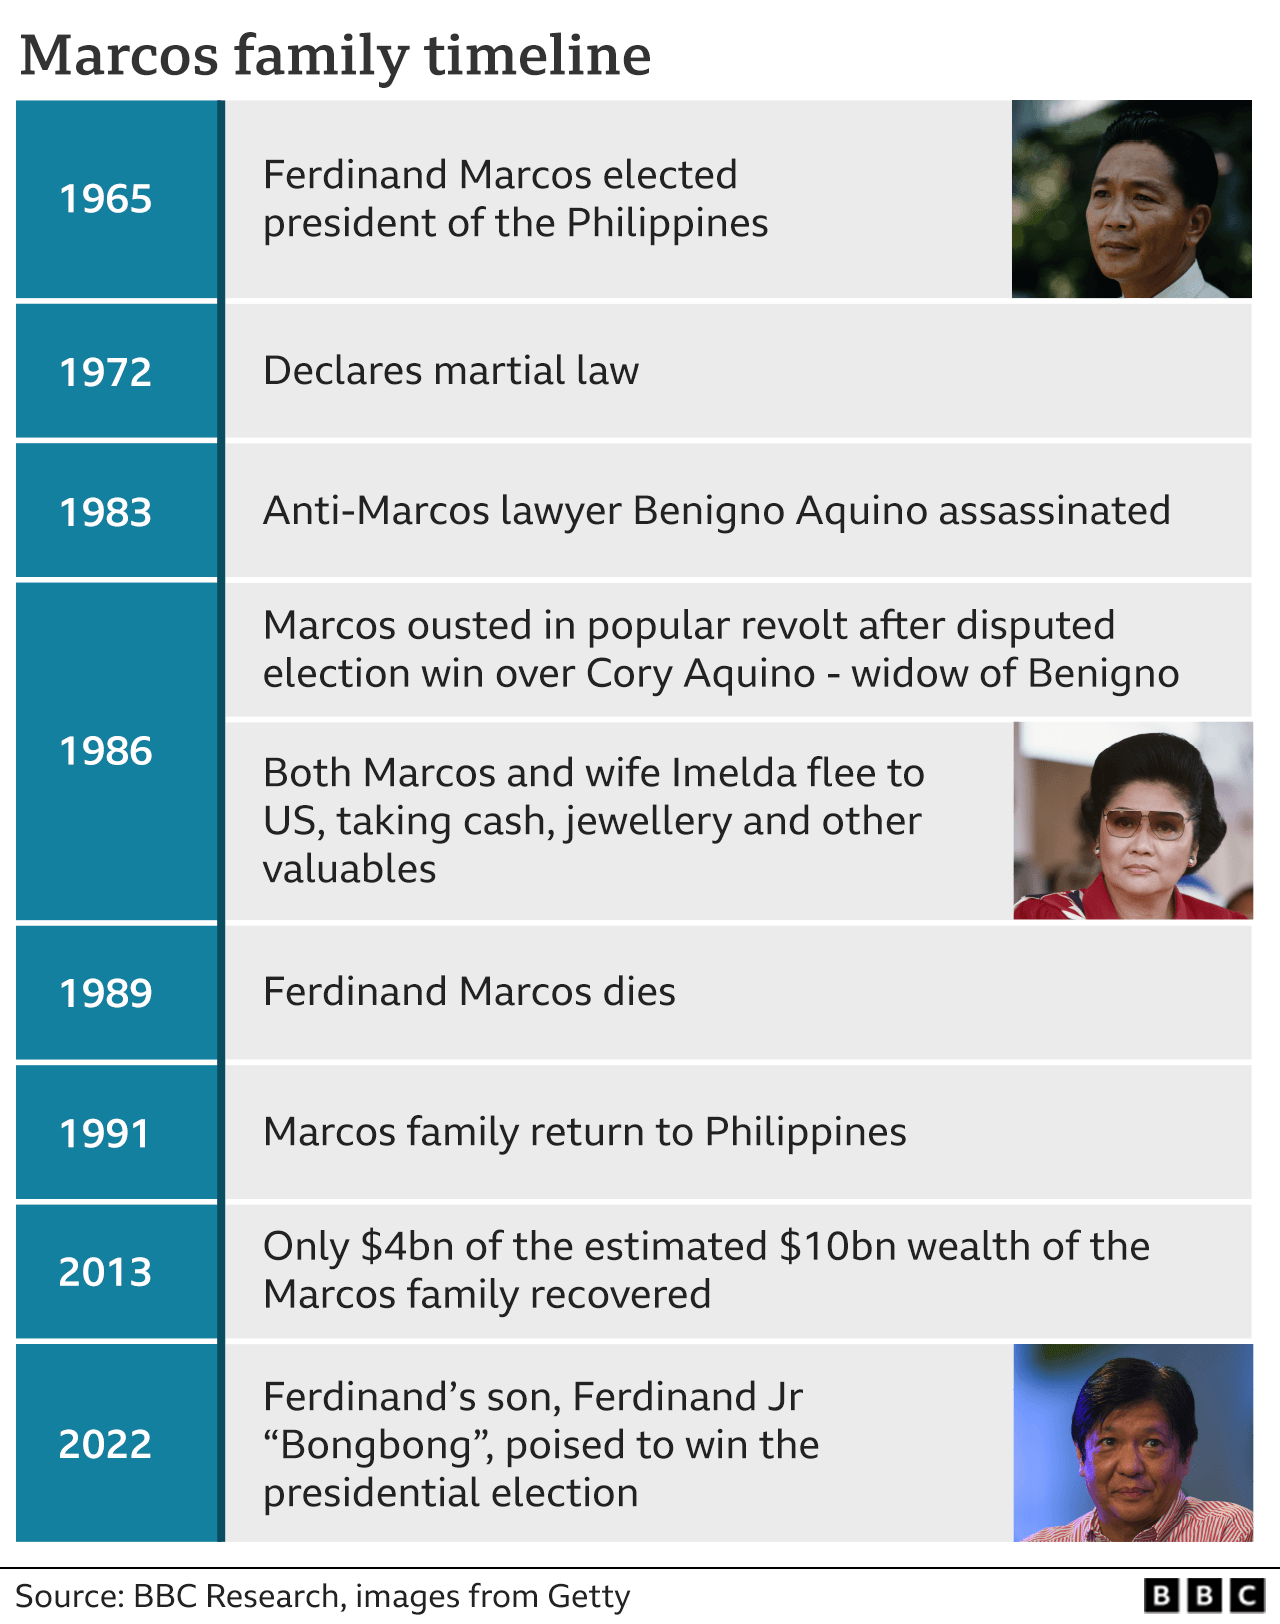 Временная шкала, показывающая историю семьи Маркос